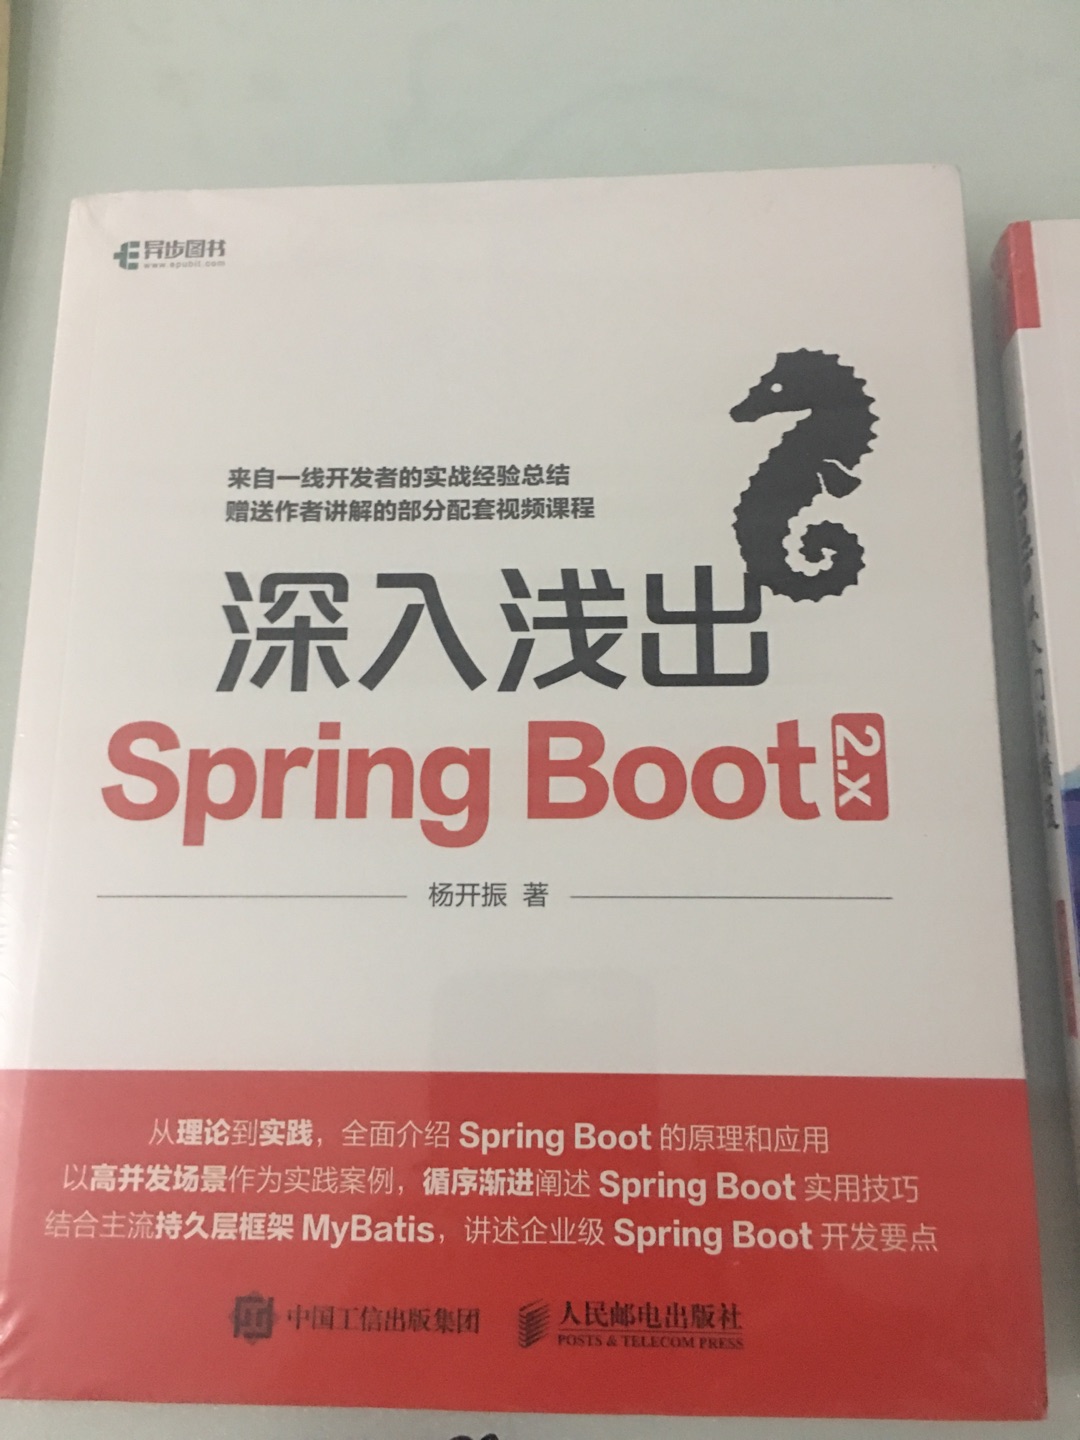 市面上springboot的书籍很少，尤其是2.x版本的就更少了，这本书今年刚出的，买回来学习下，研究研究，自己自学java，网上资料和书籍结合起来看。